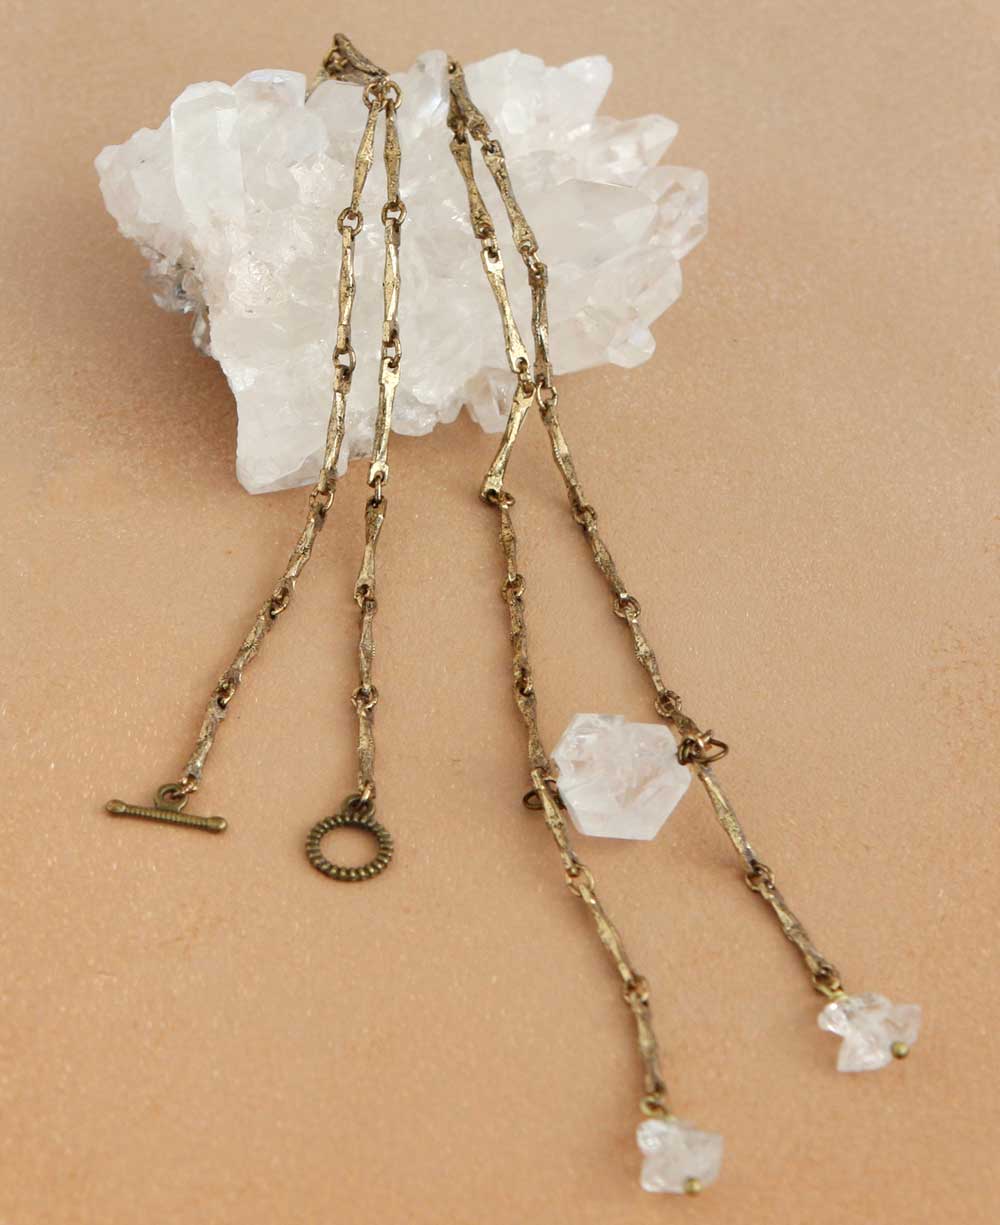 Brass and Quartz Necklace